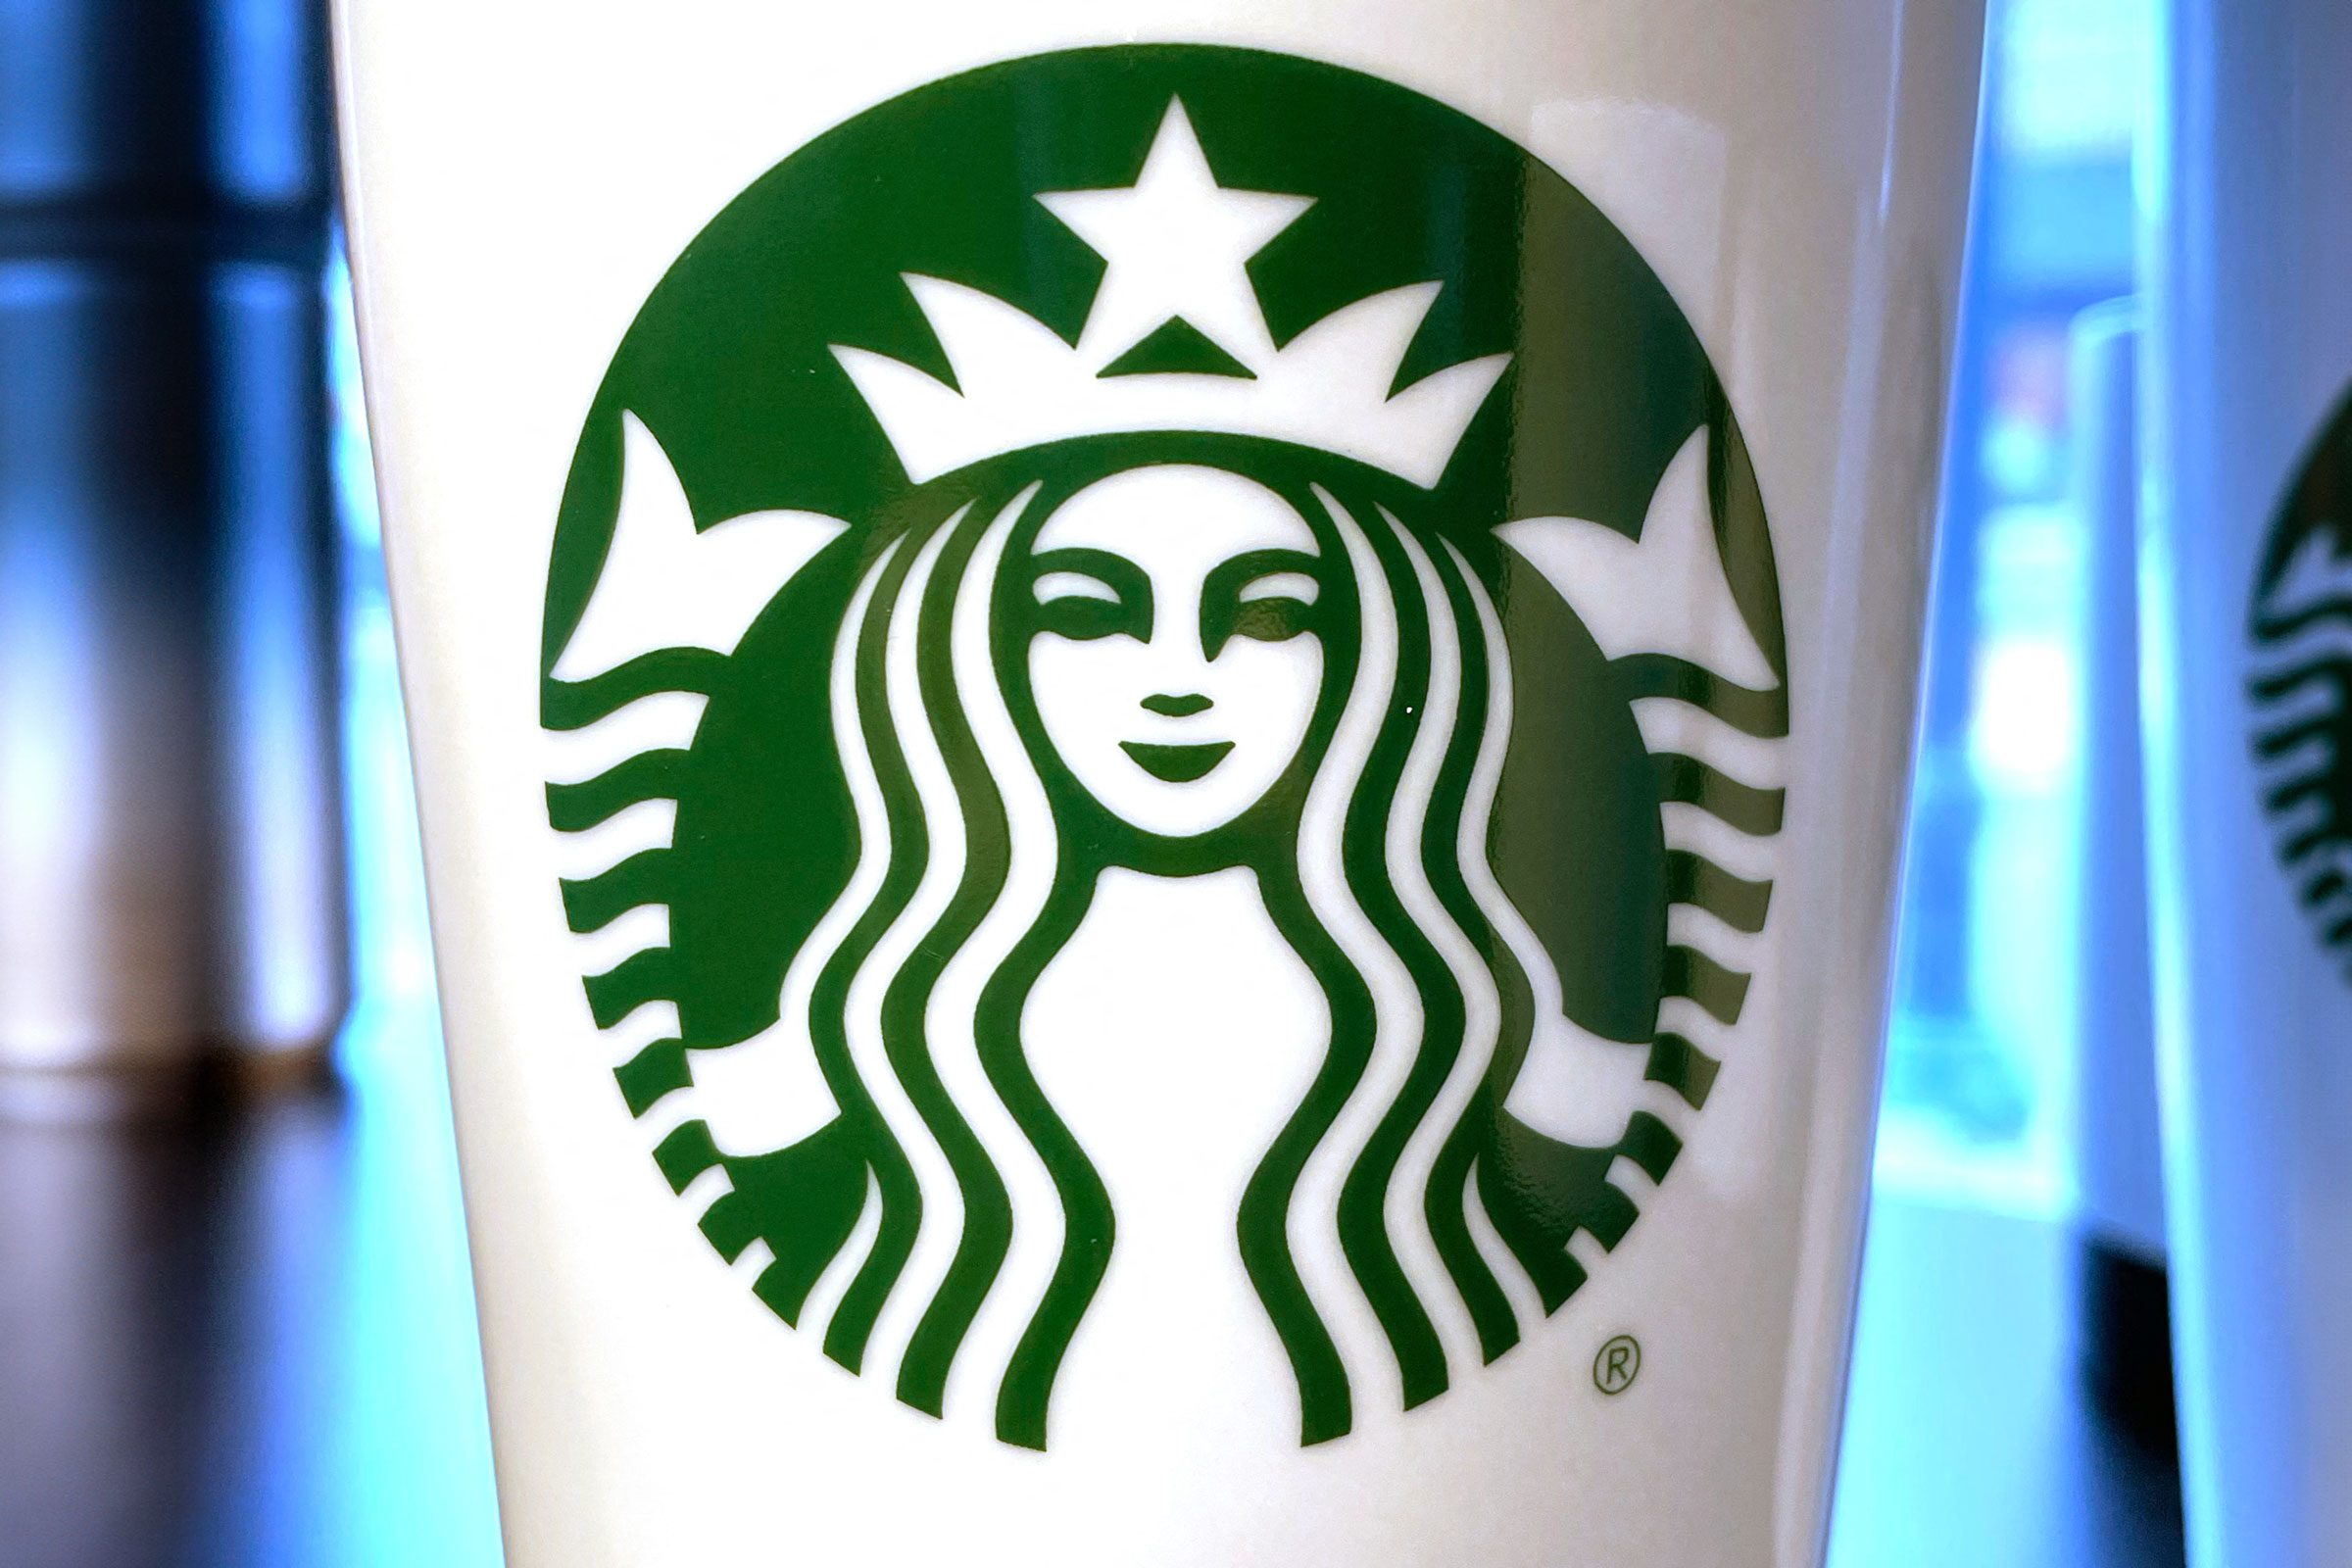 More Than 440,000 Starbucks Mugs Recalled Nationwide